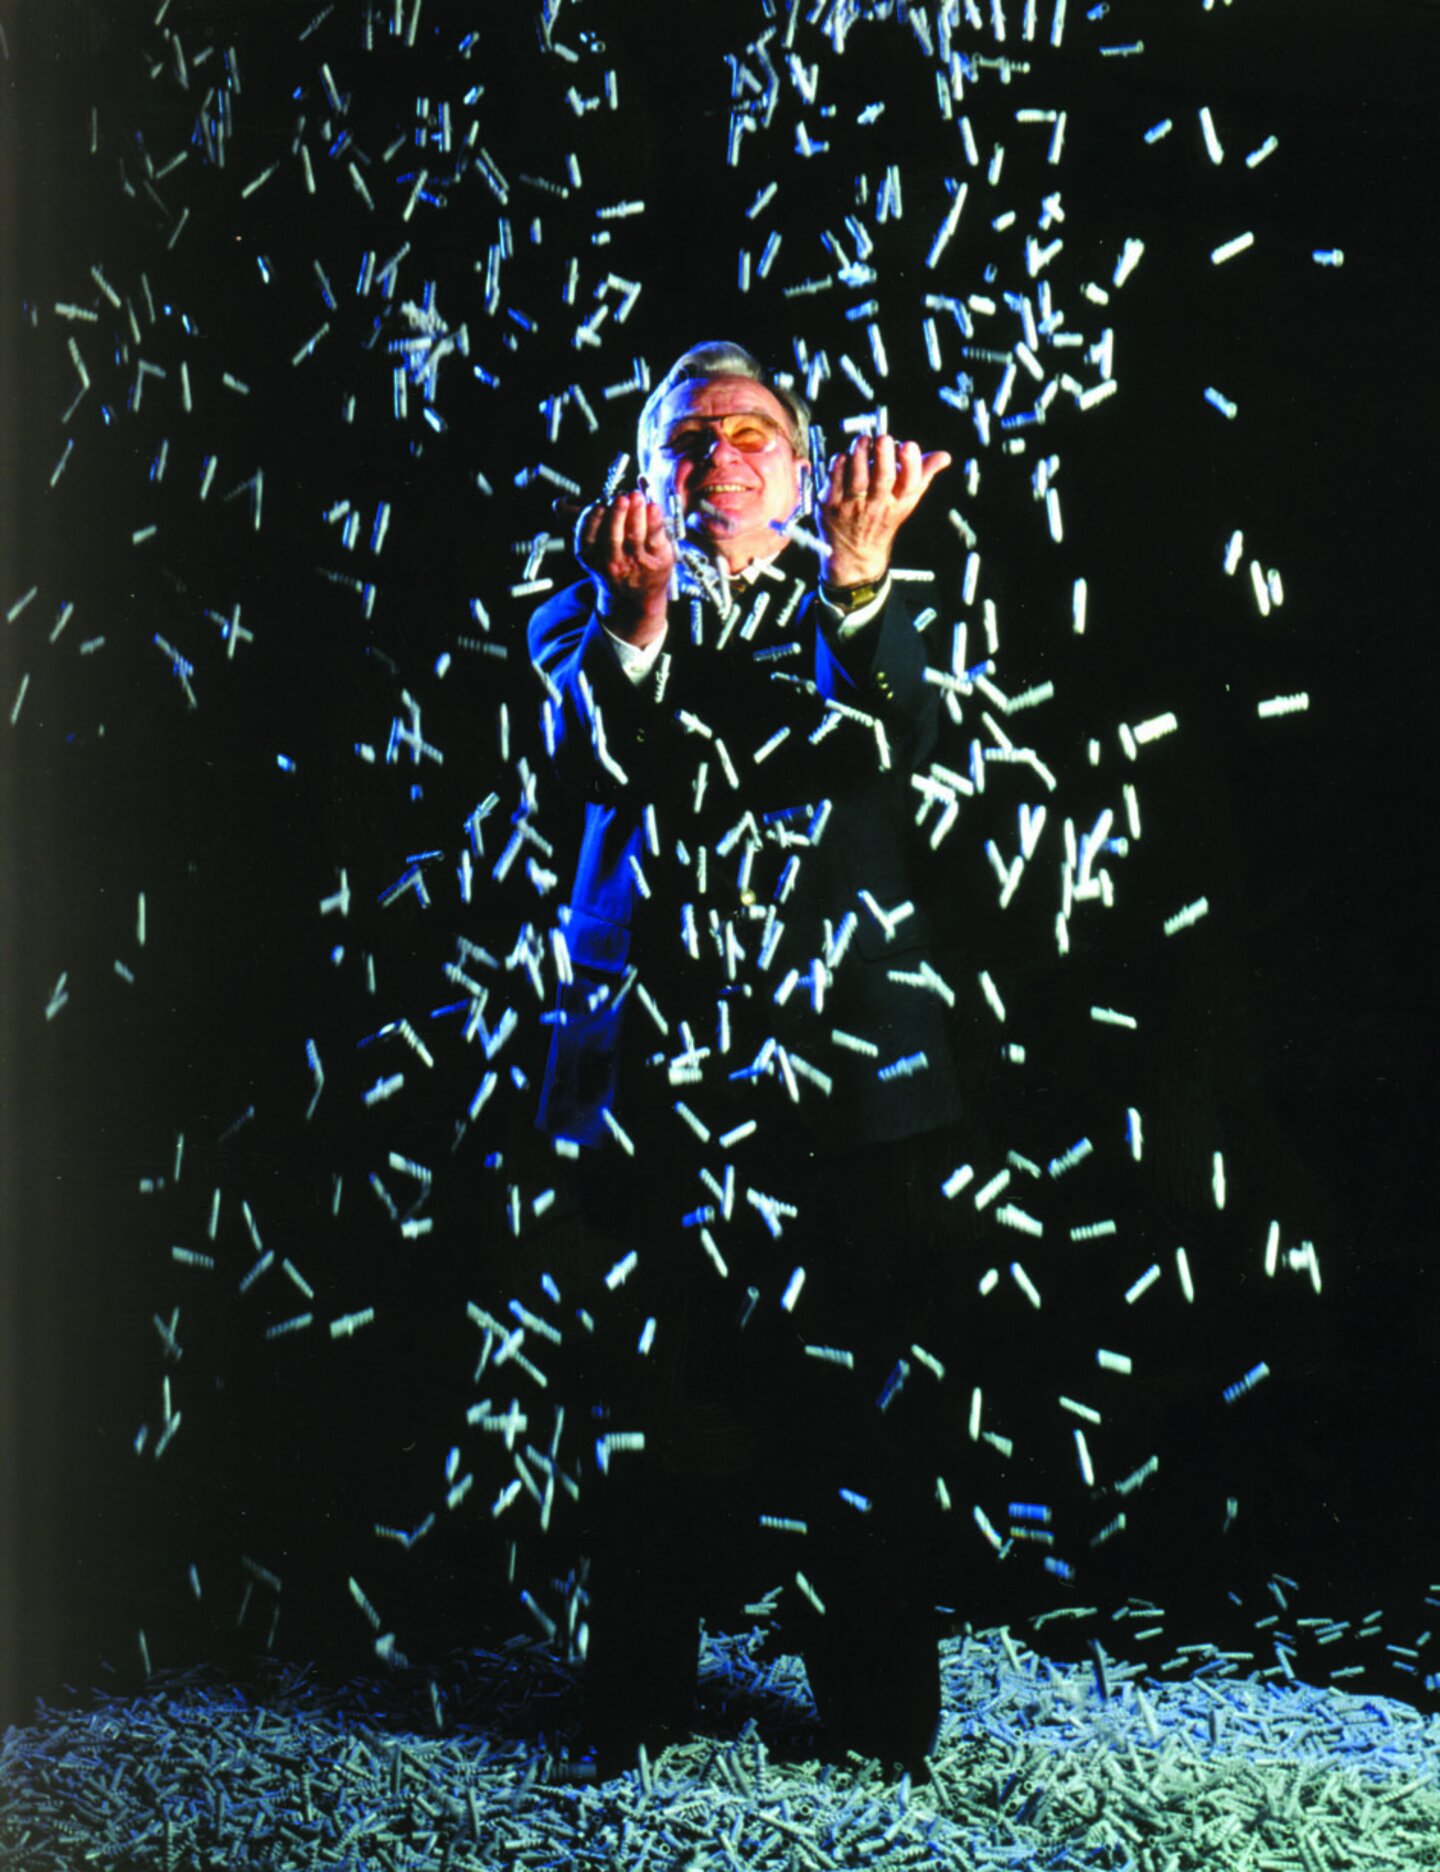 Der Erfinder Artur Fischer wirft sehr viele Dübel wie Konfetti in die Luft.